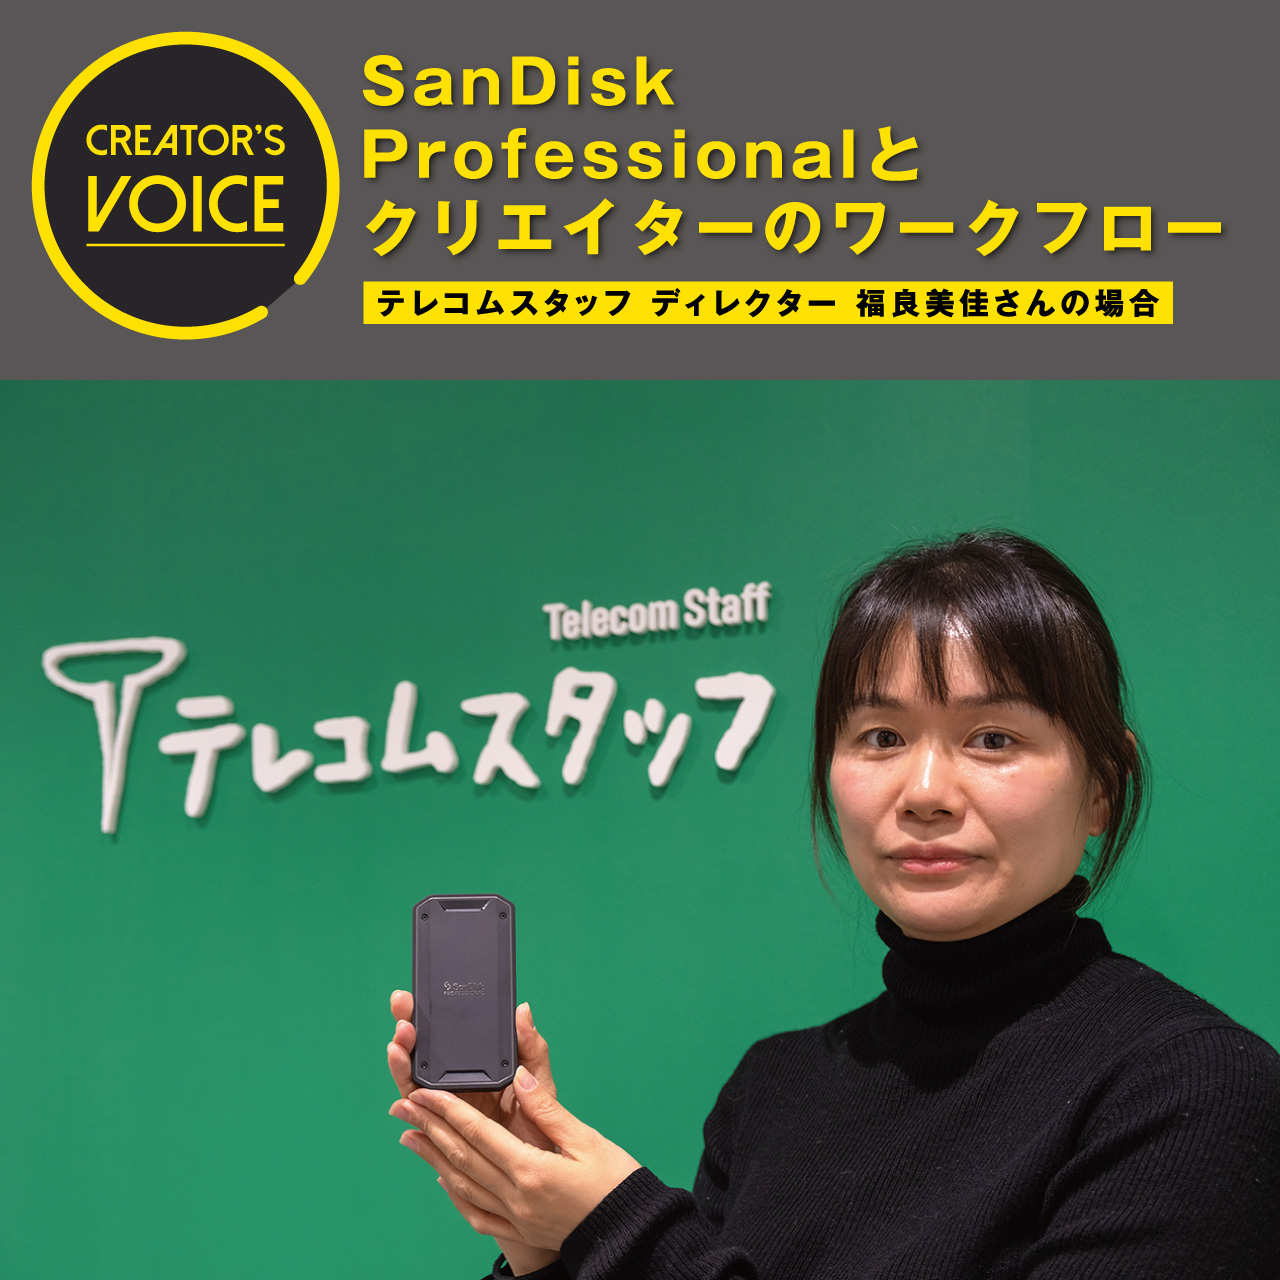 SanDisk Professionalとクリエイターのワークフロー〜テレコムスタッフ ディレクター 福良美佳さんの場合